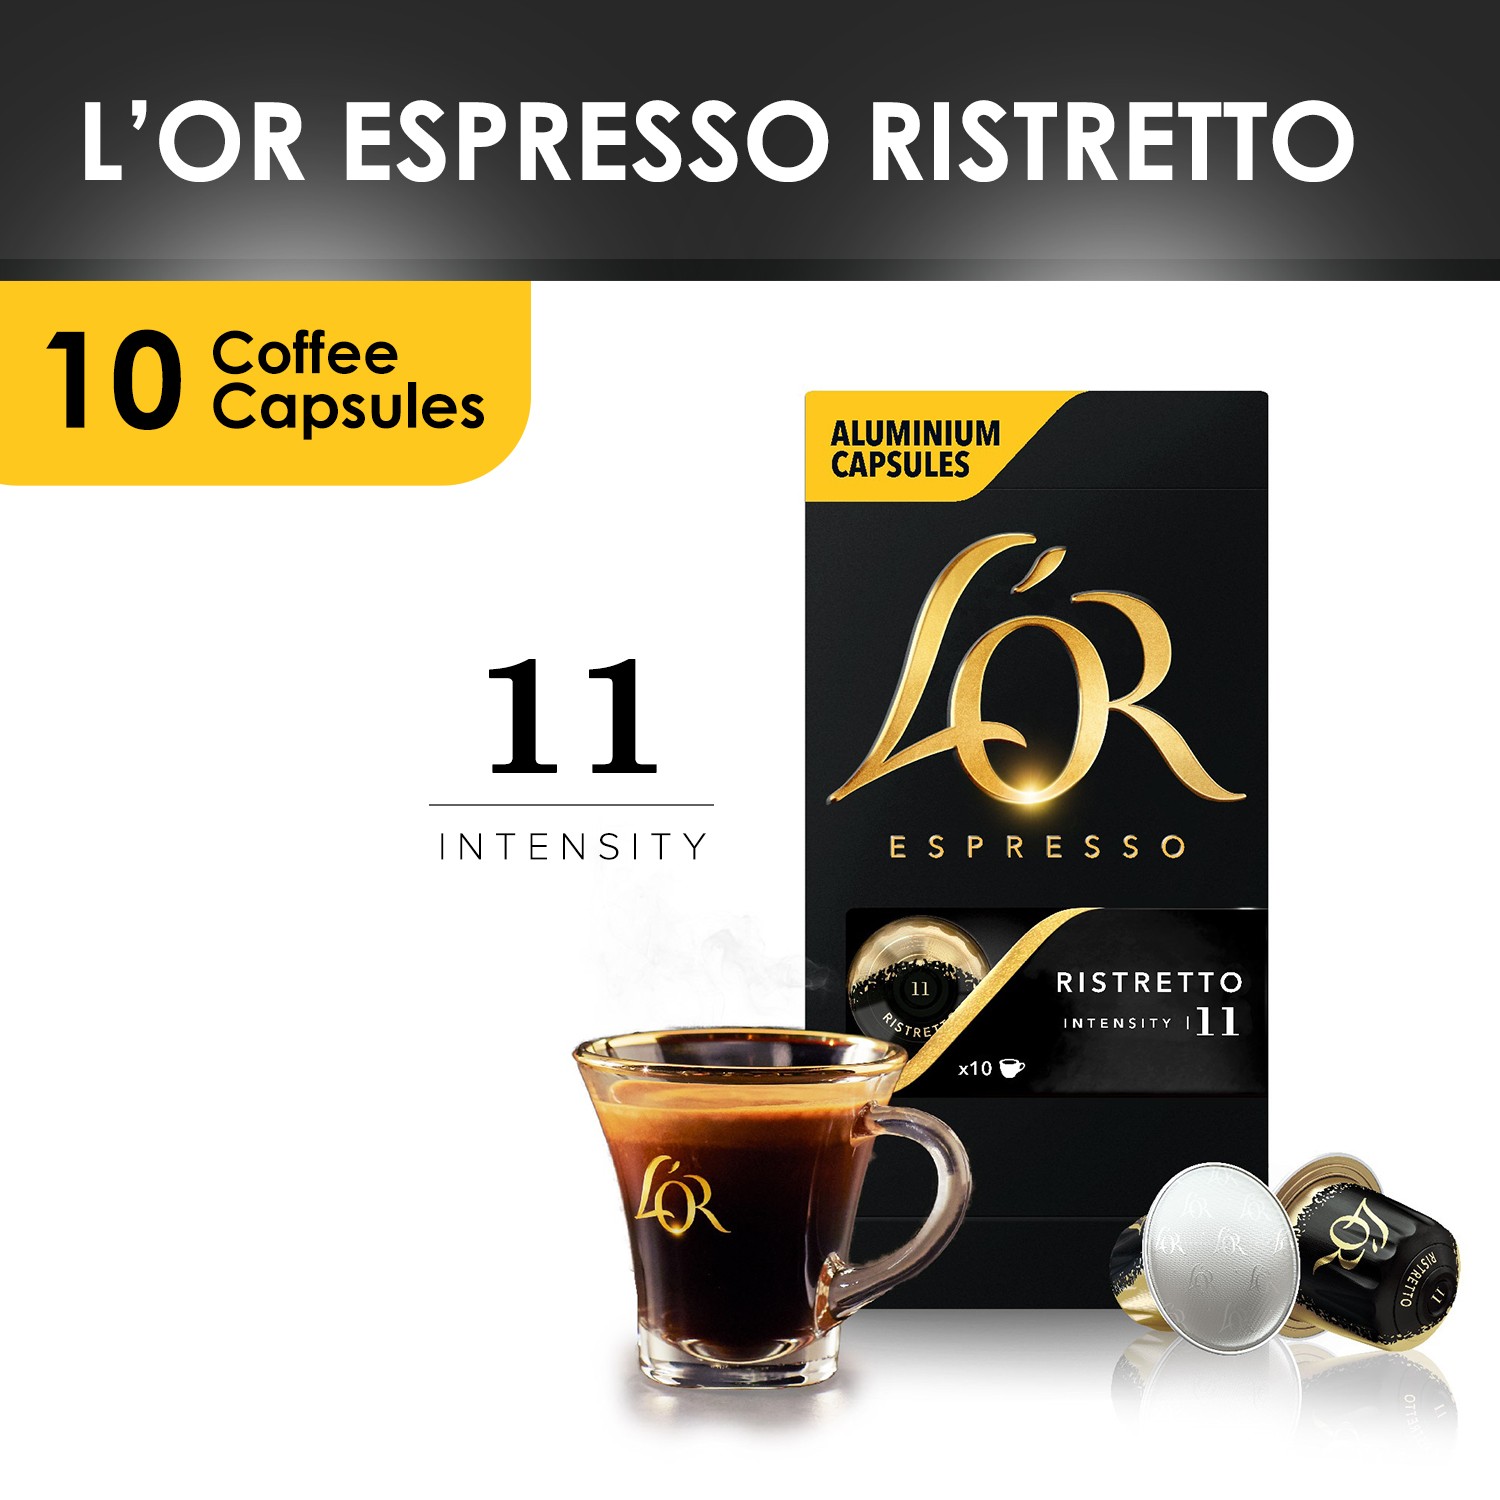 L'or espresso ristretto capsules x10 52g